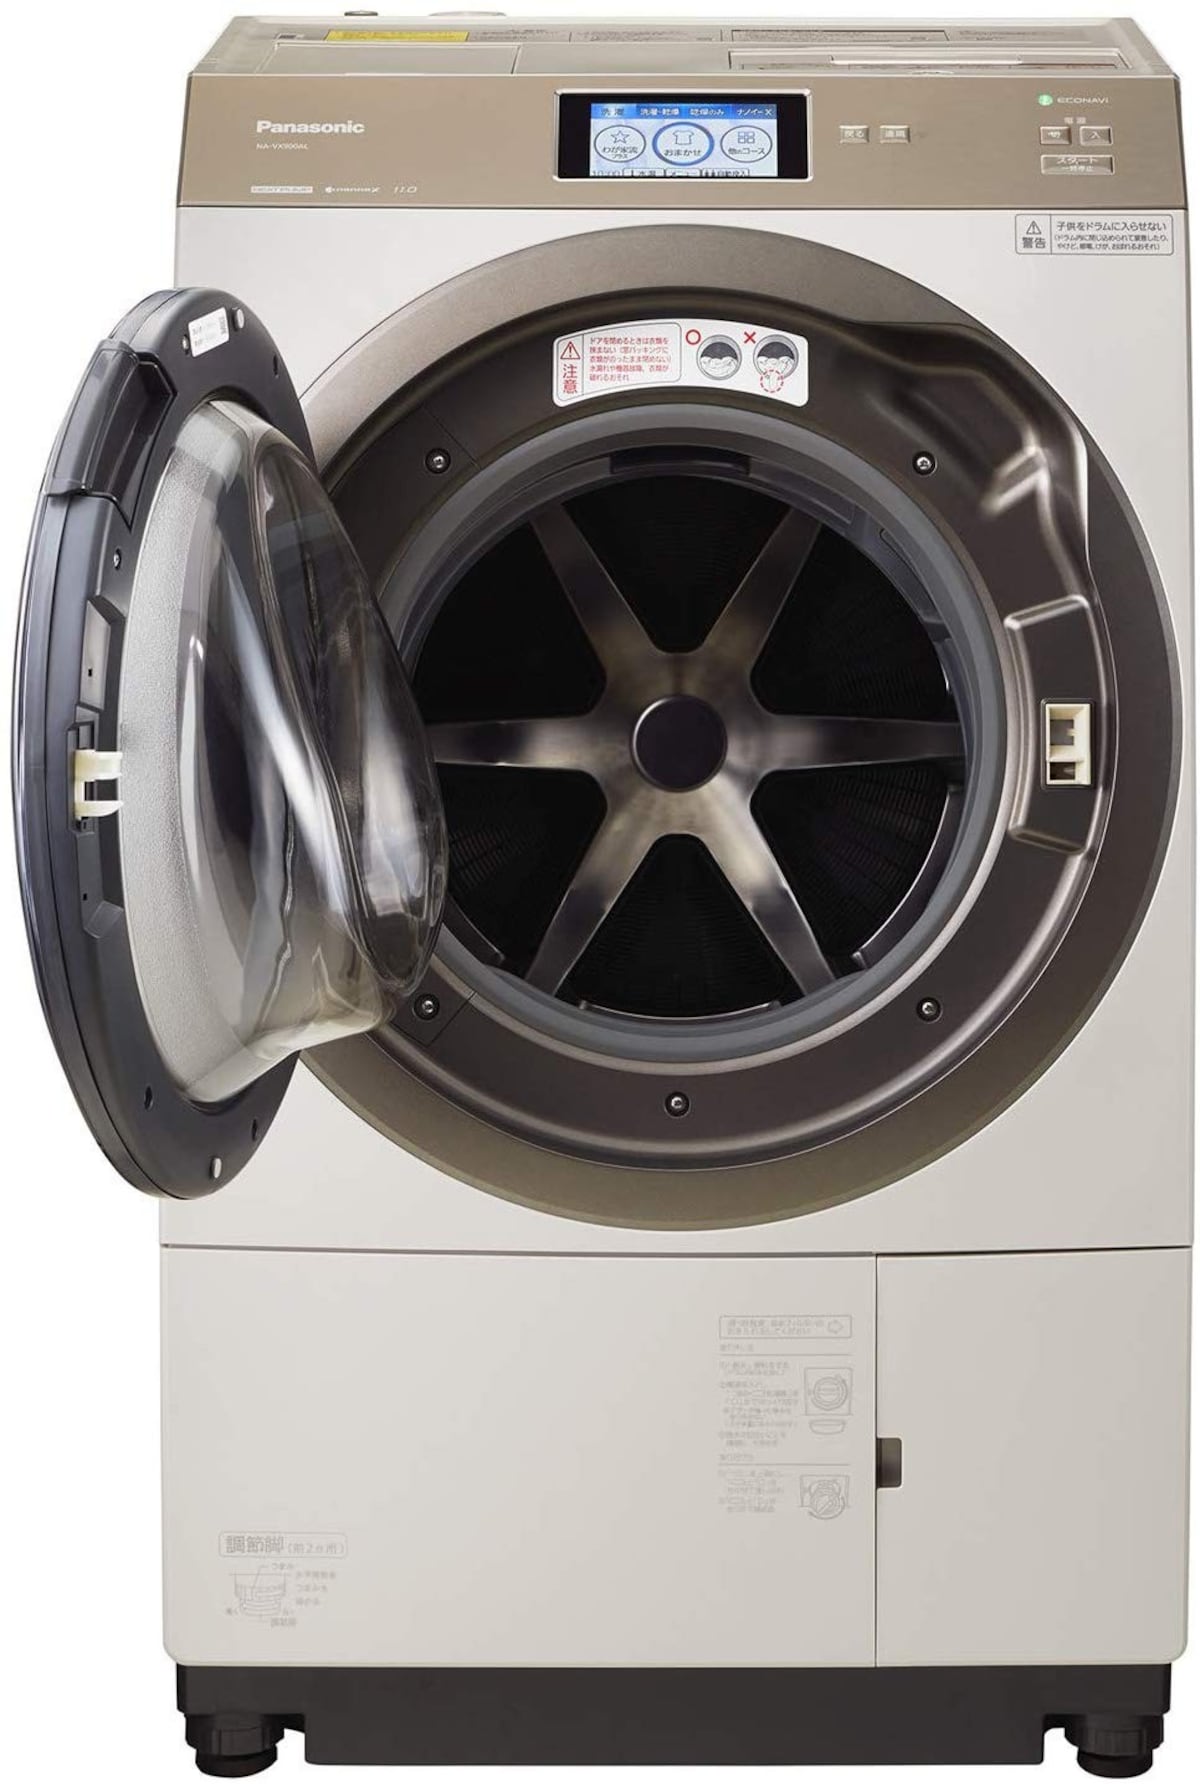  ななめドラム洗濯乾燥機 11kg 画像2 